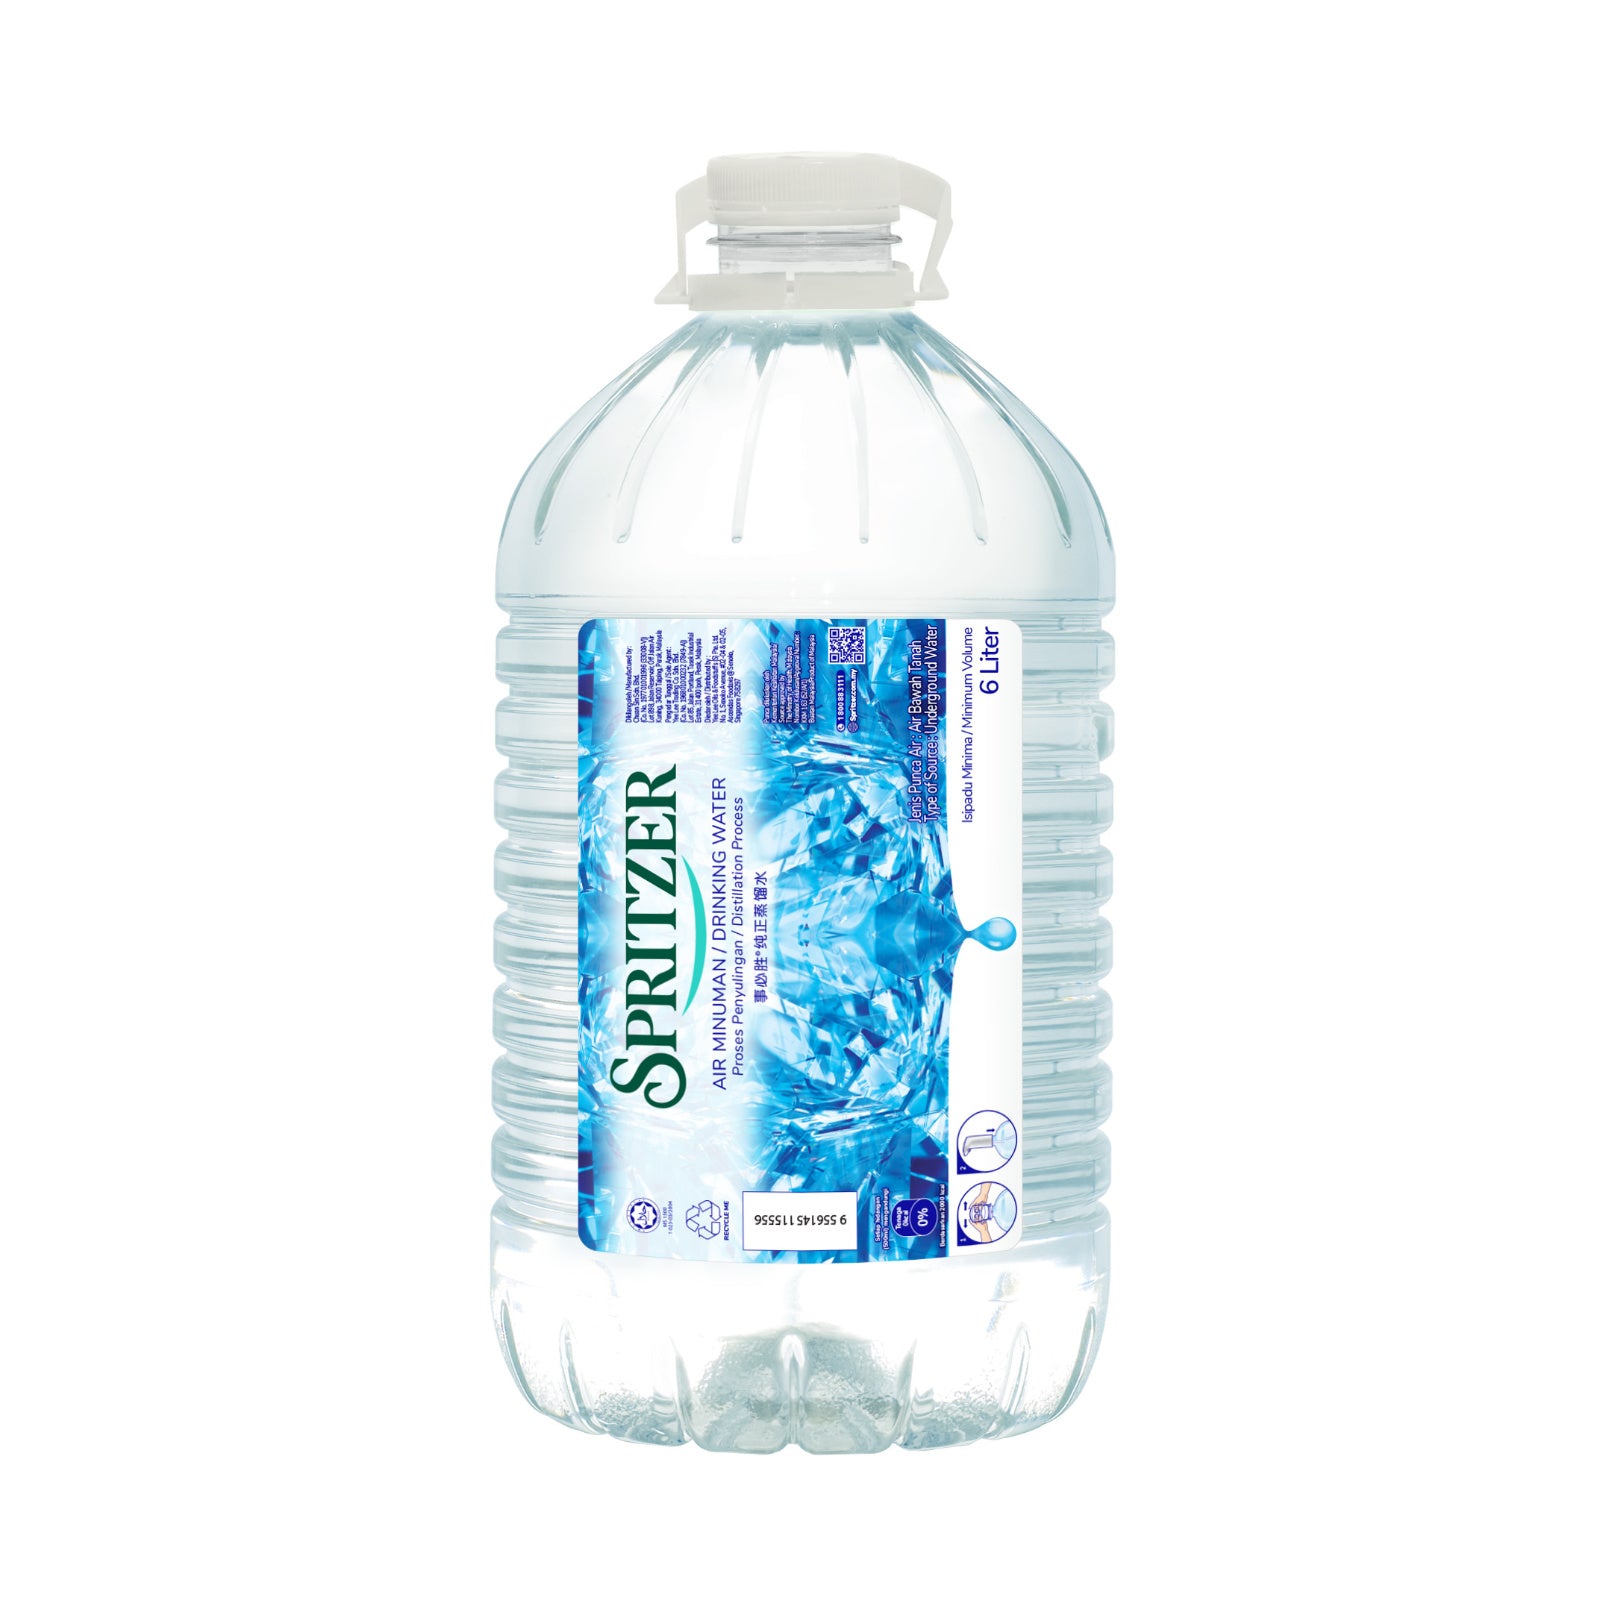 Spritzer Distilled Water 1.25L